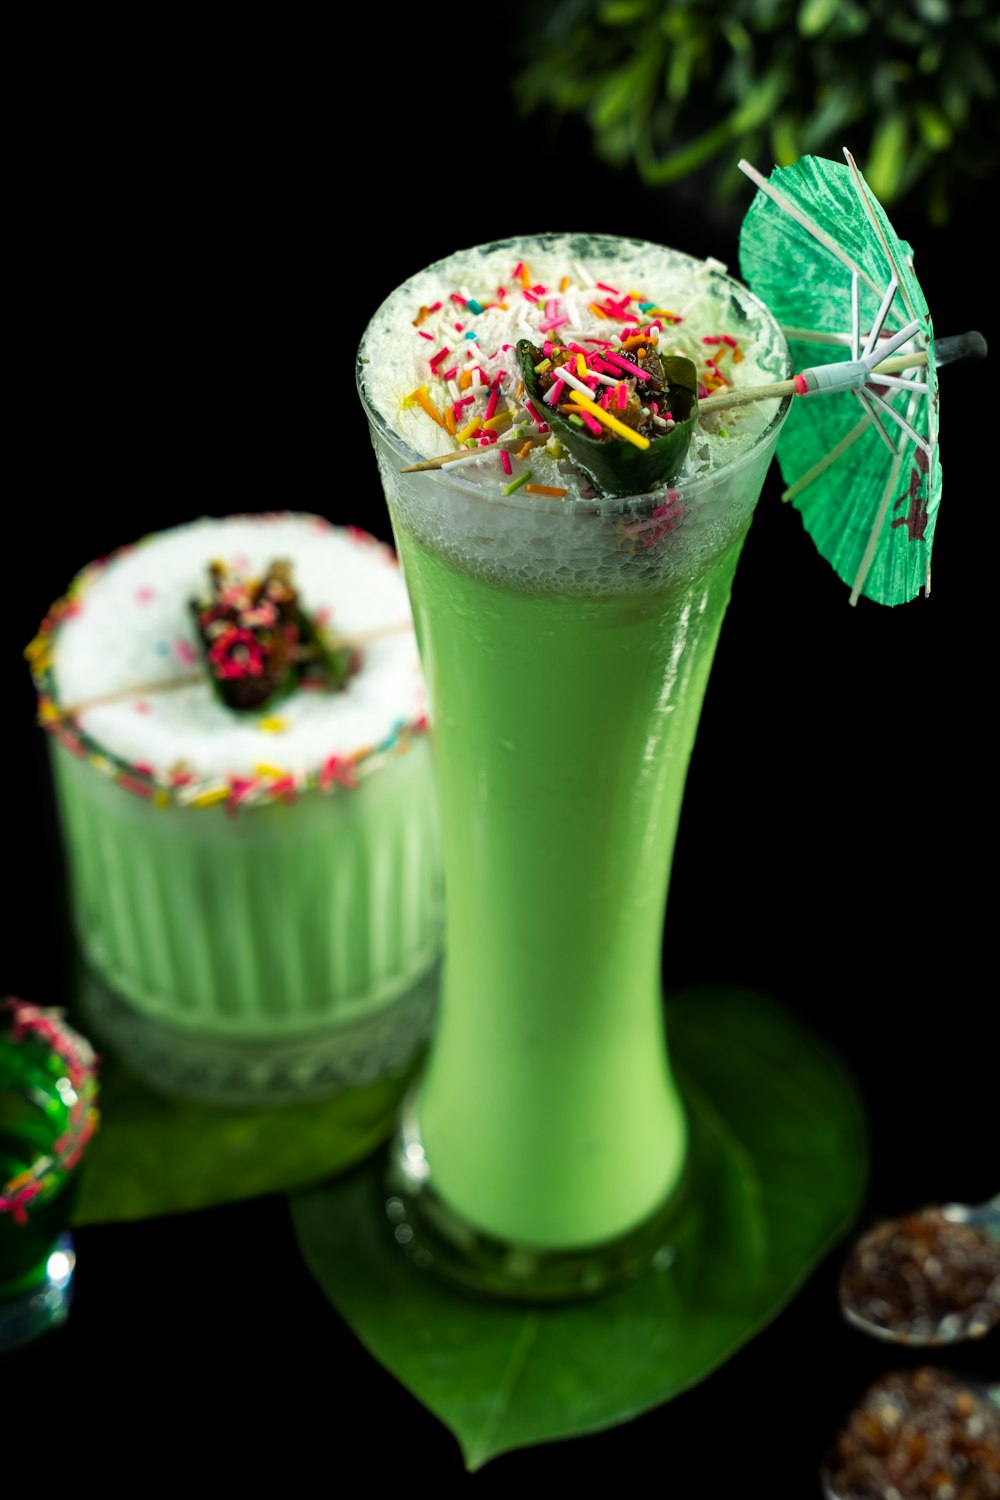 ein grünes Getränk mit Streuseln und einem grünen Regenschirm